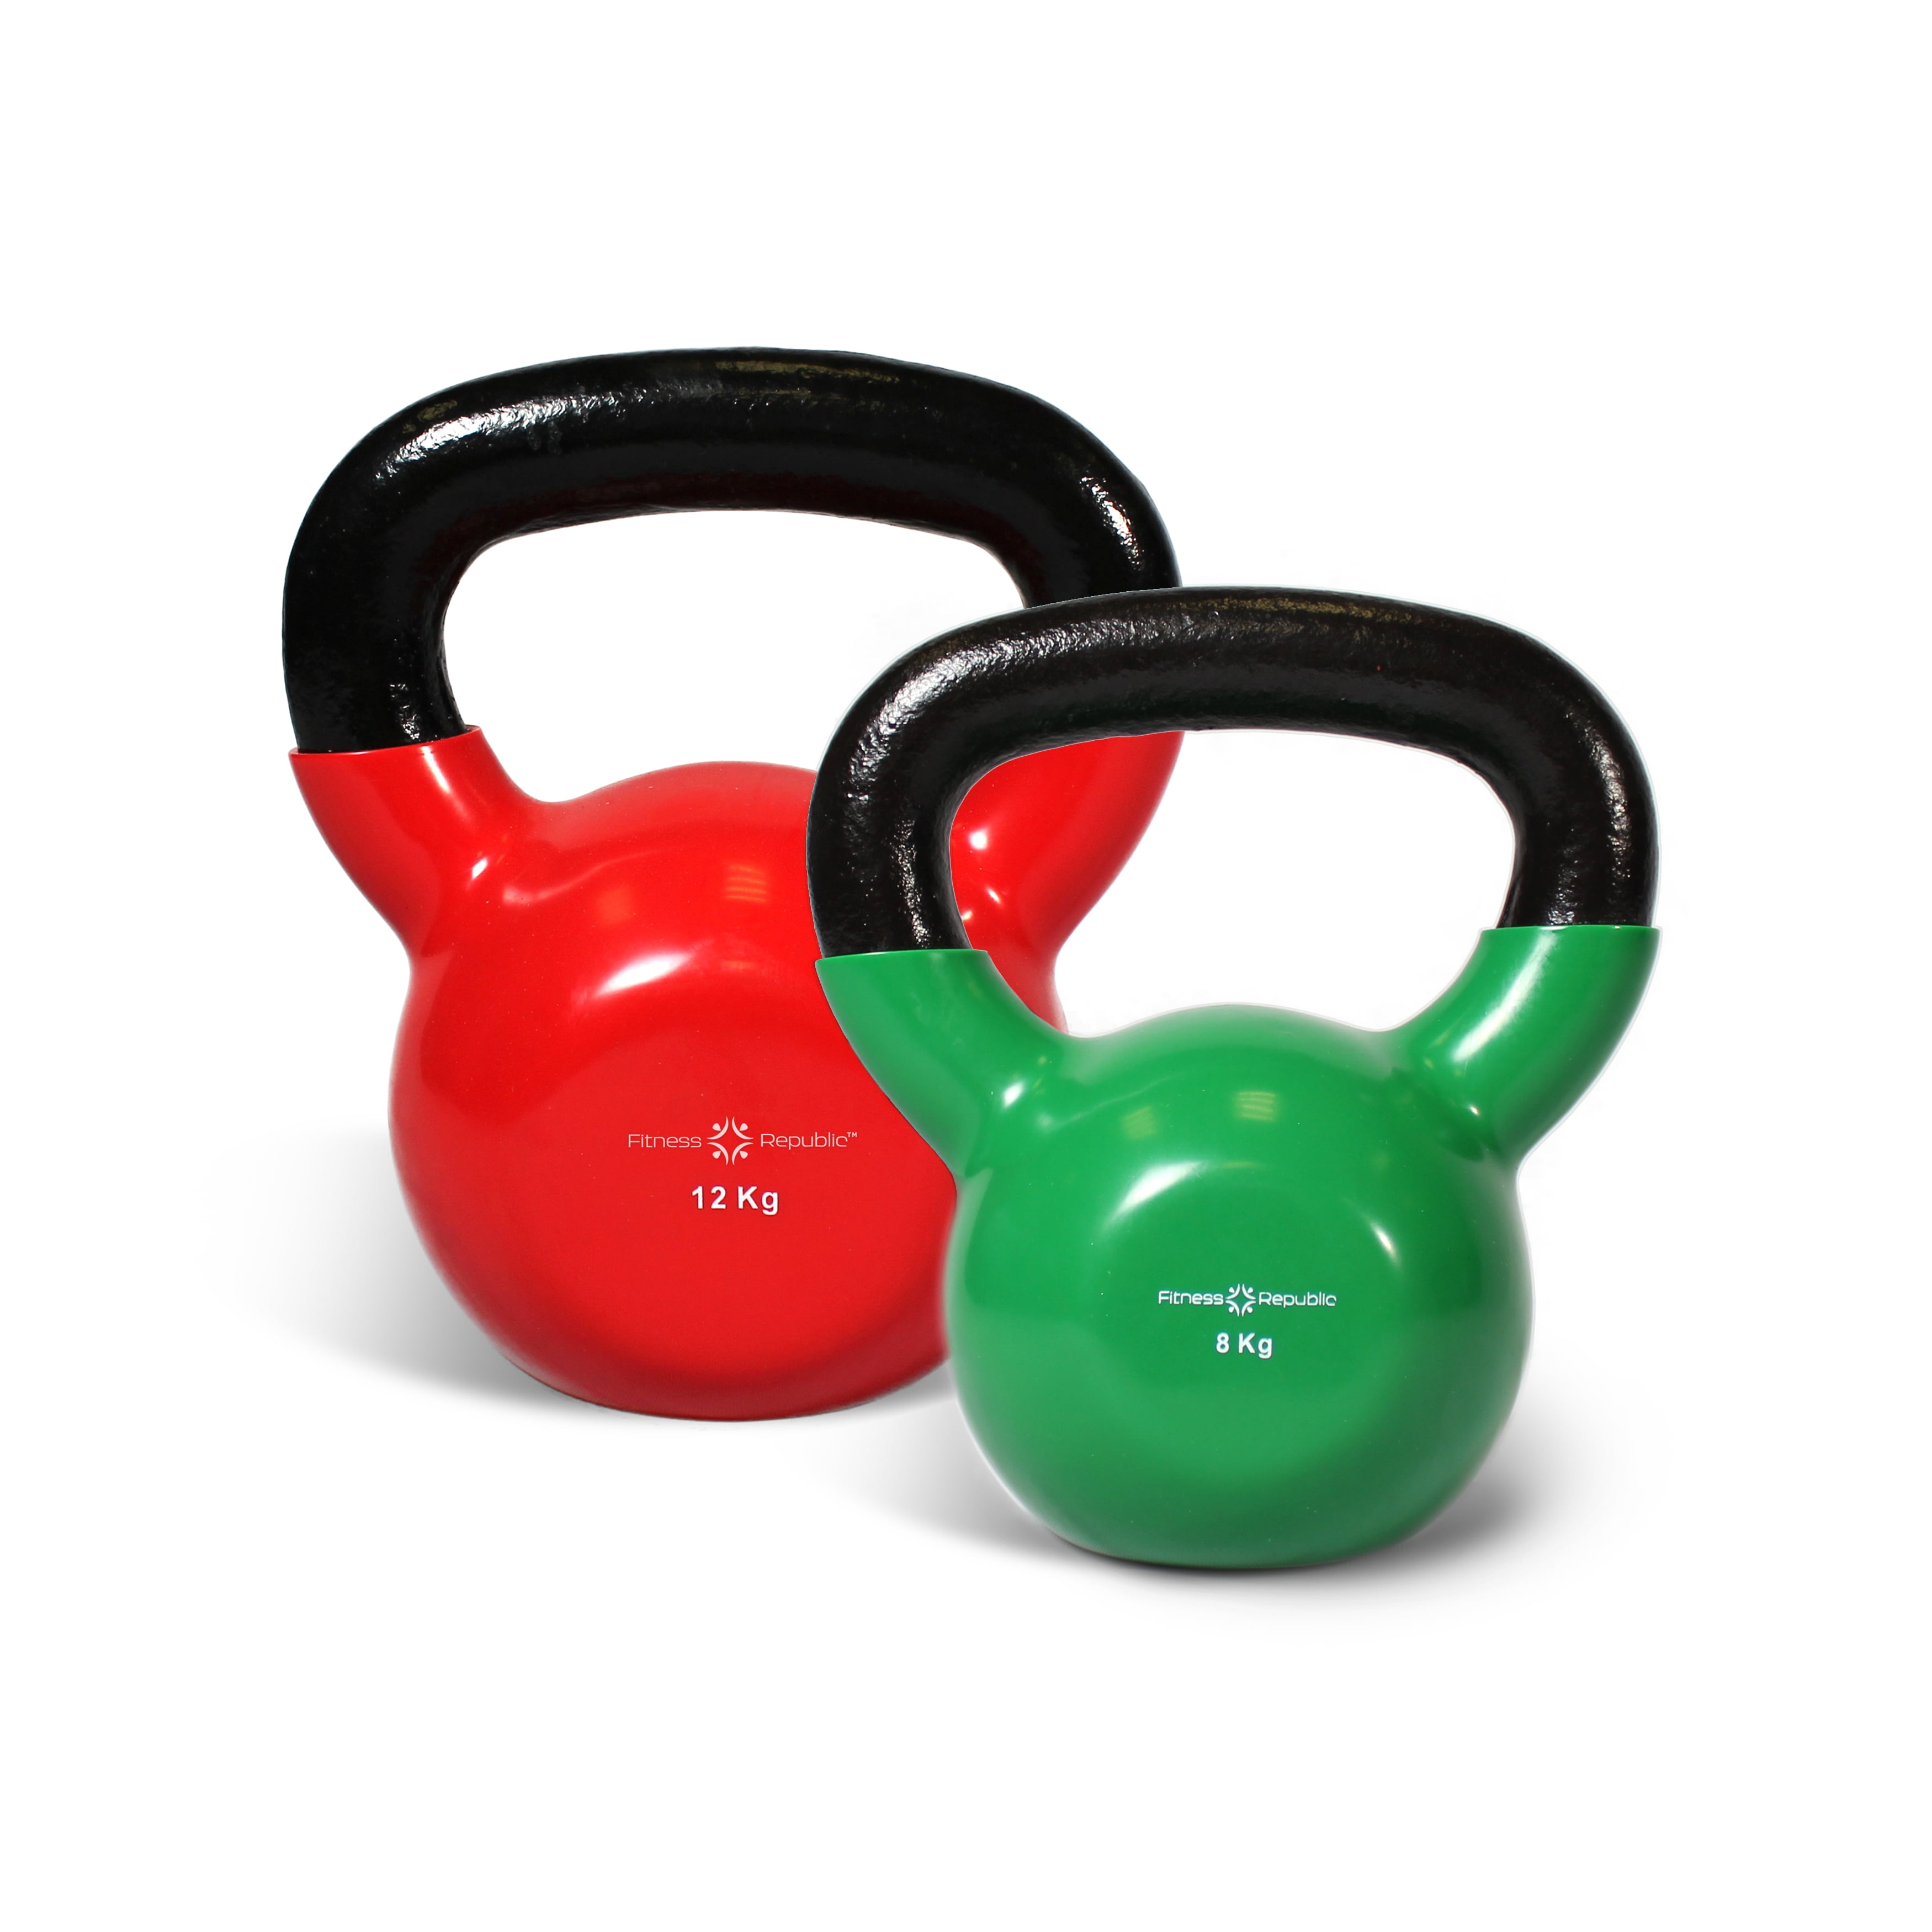 Vinyl Kettlebell Weight Fitness Home Gym Workouts Kettlebells 2-12kg 